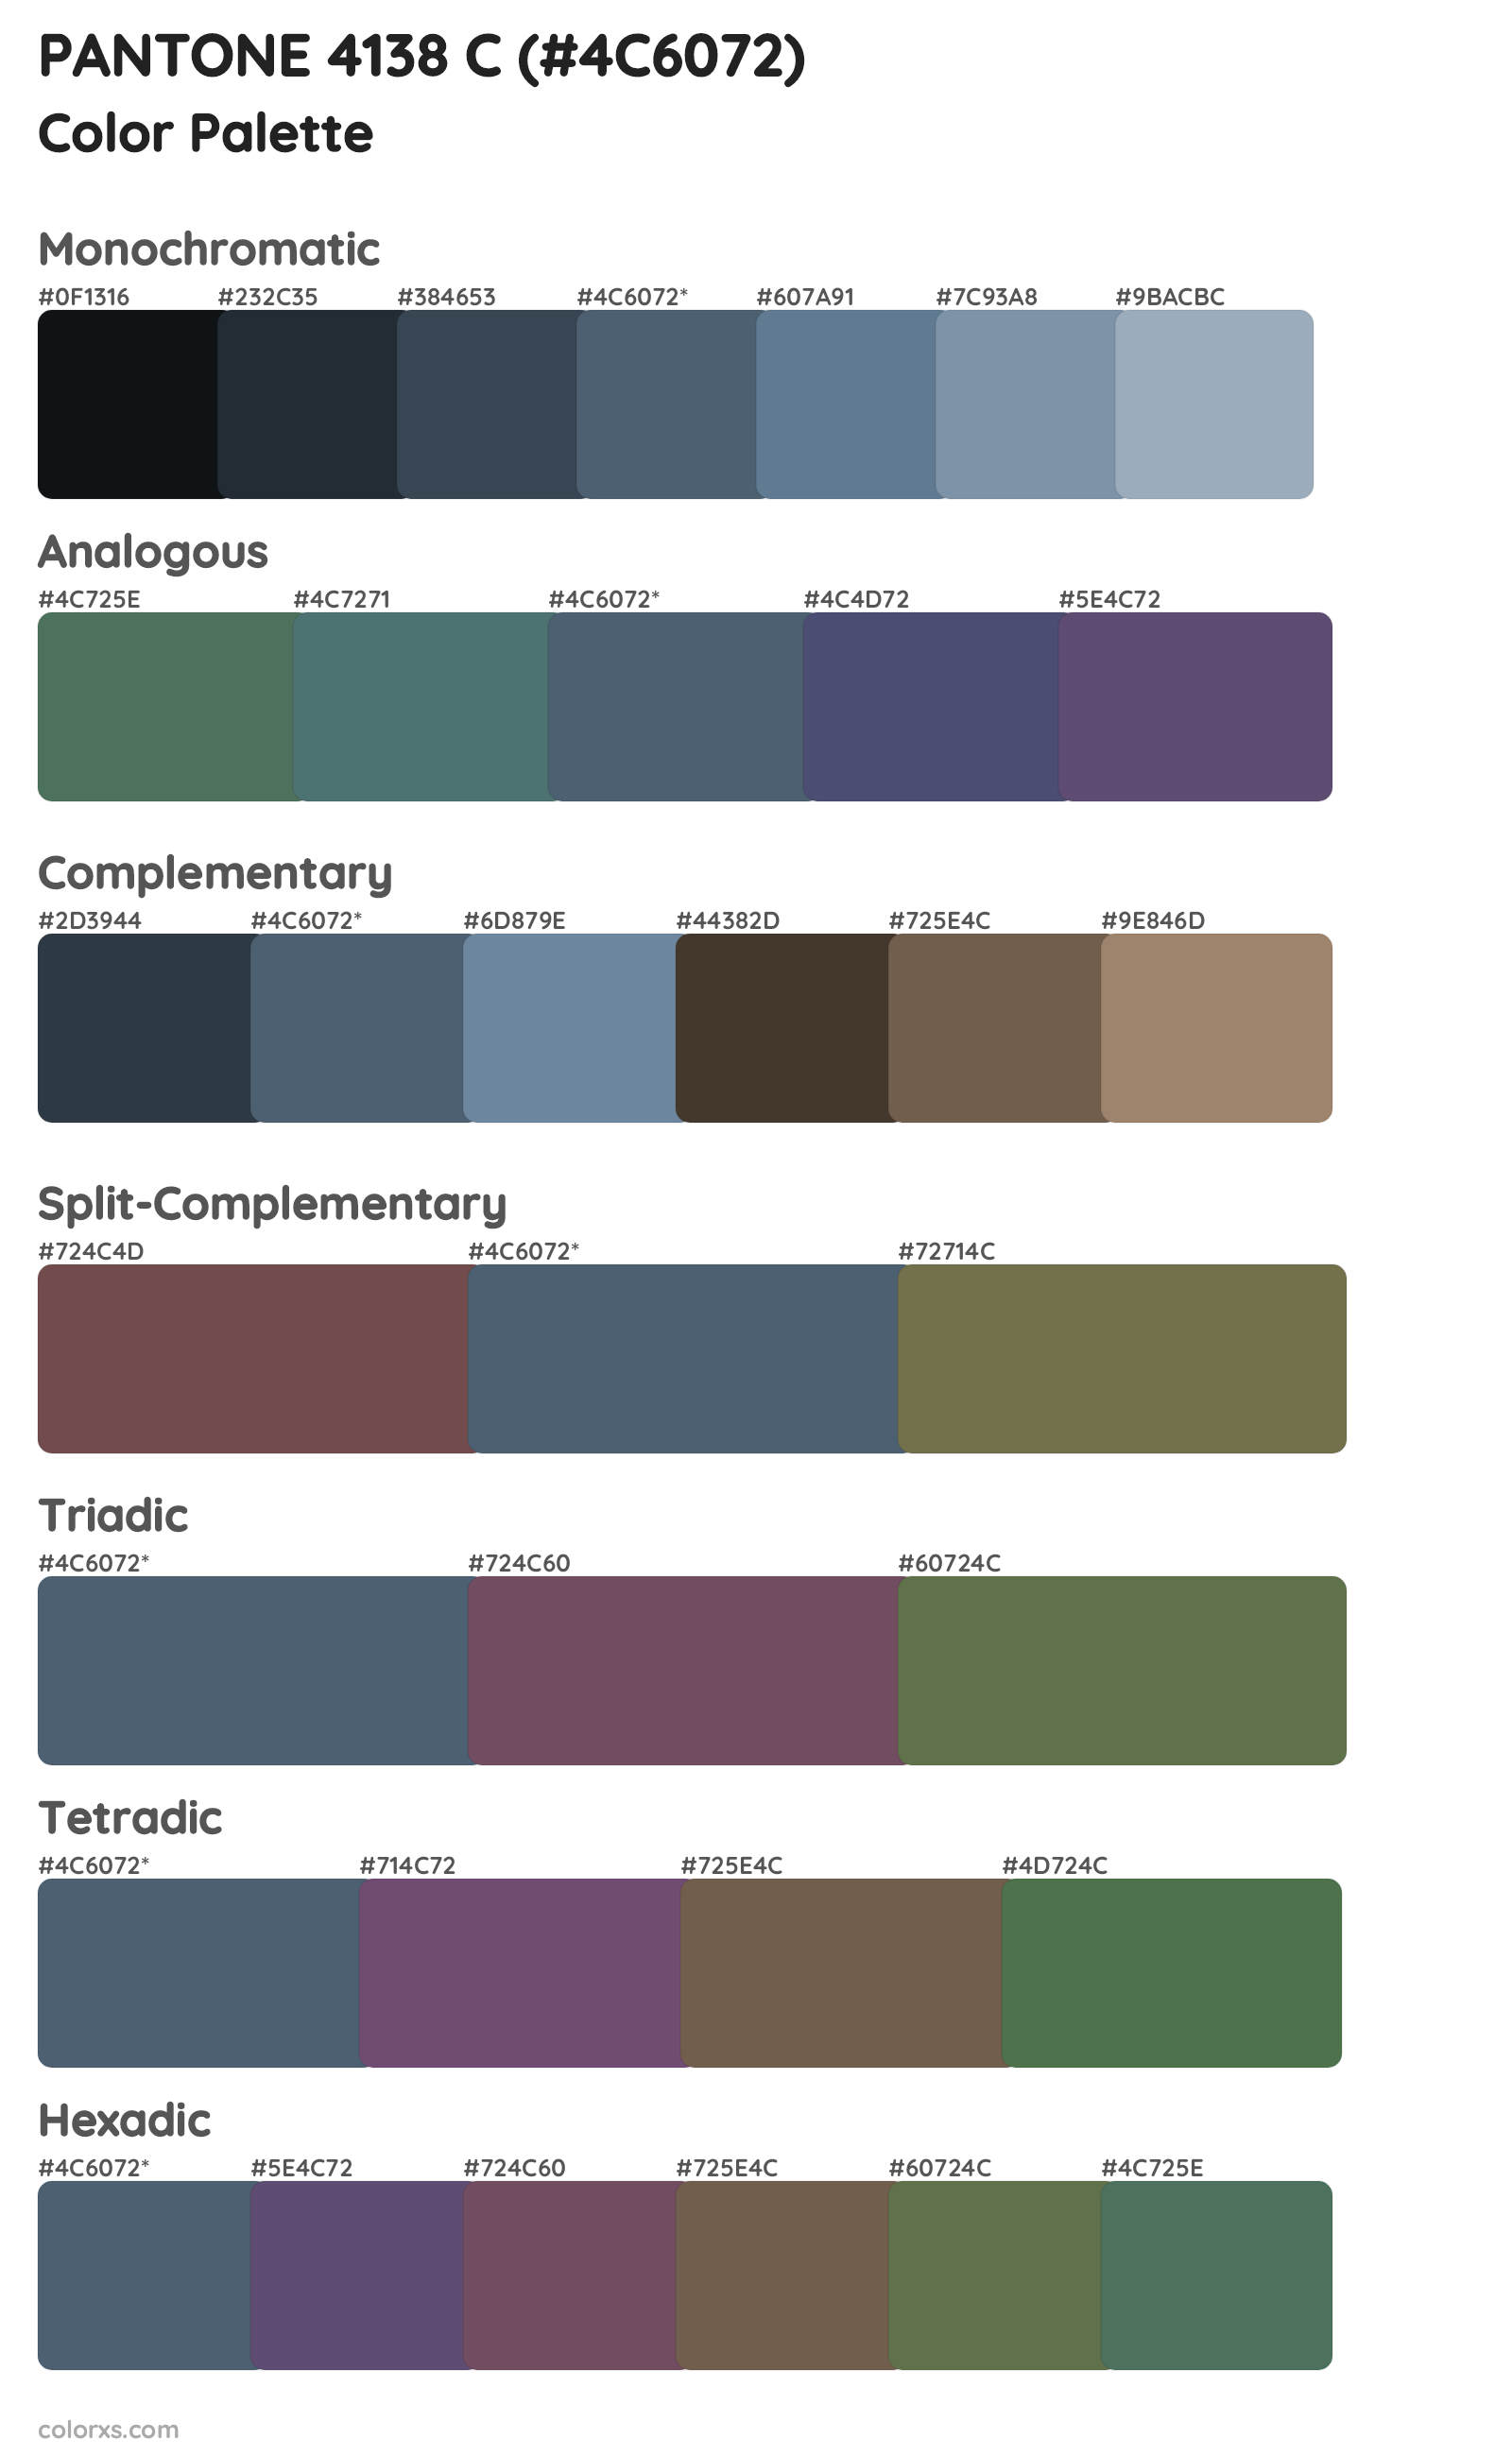 PANTONE 4138 C Color Scheme Palettes